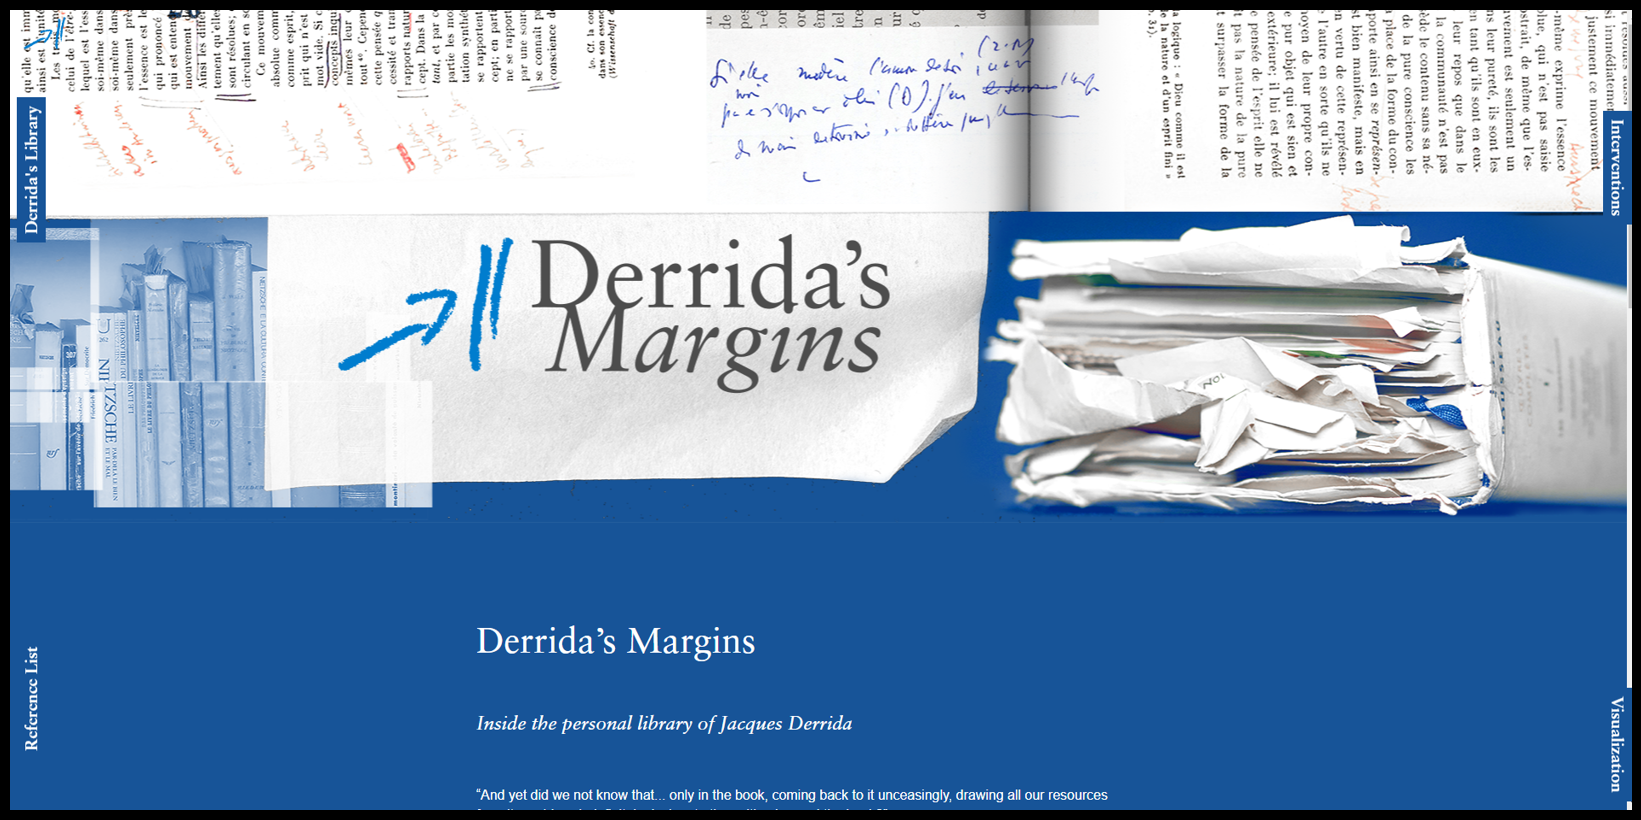 Derrida's Margins 웹사이트 가기